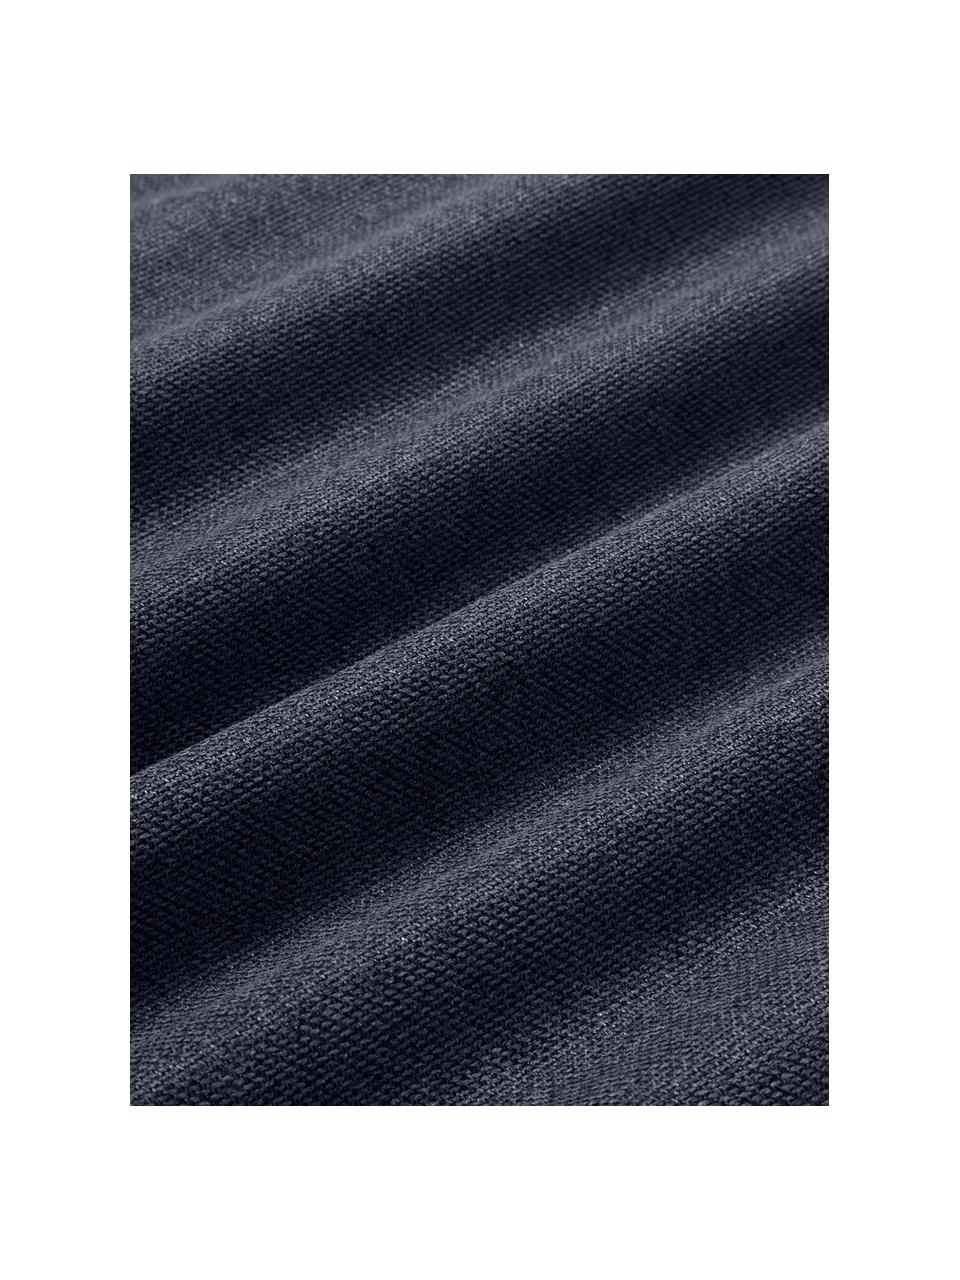 Cuscino decorativo Lennon, Rivestimento: 100% poliestere, Tessuto blu scuro, Larg. 70 x Lung. 70 cm